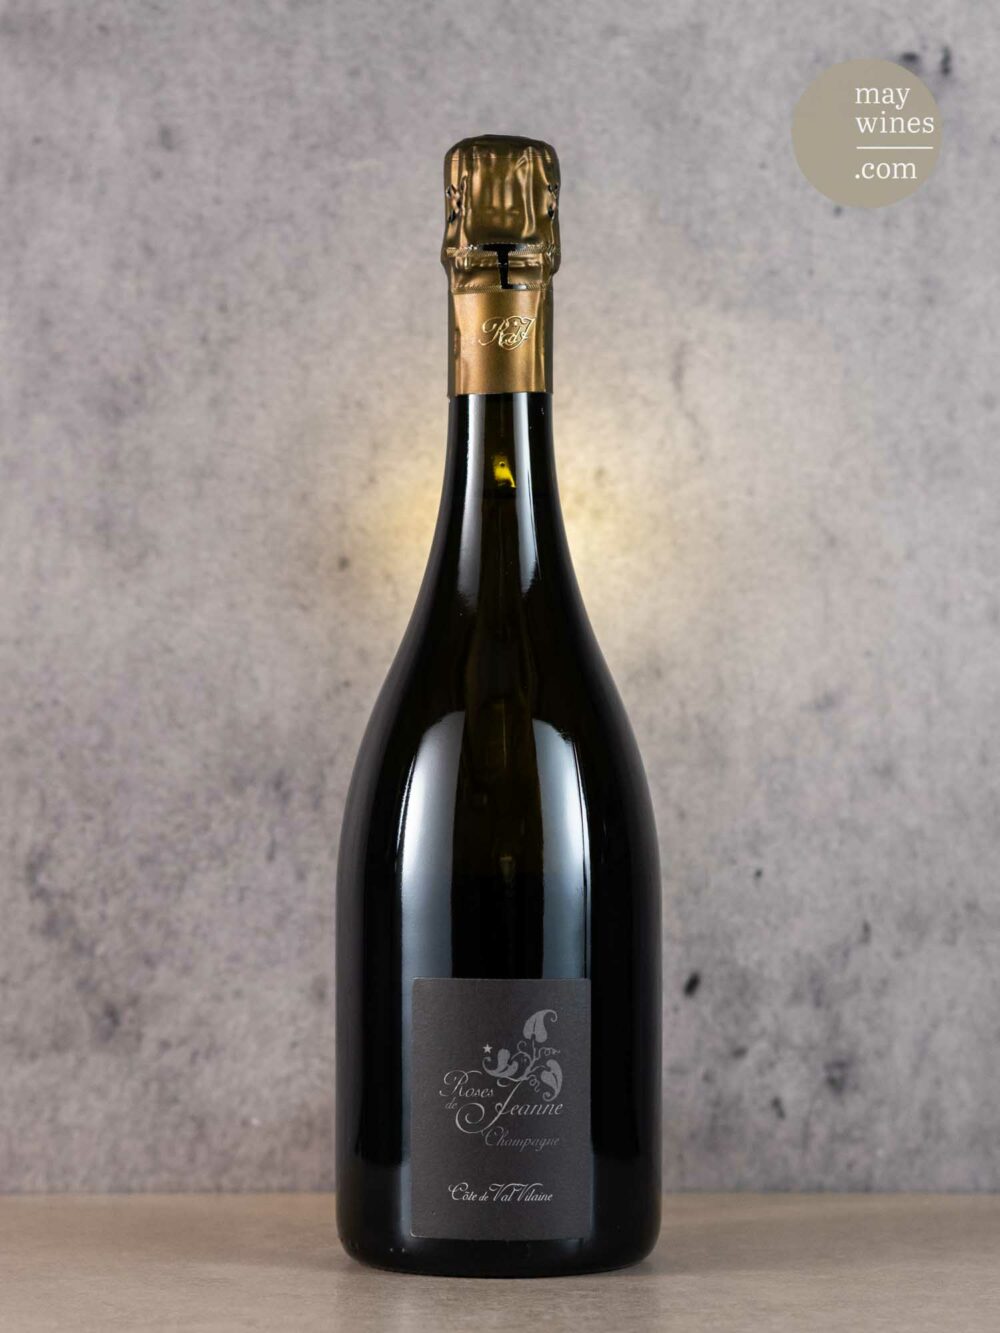 May Wines – Champagner – 2017 Côte de Val Vilaine Blanc de Noirs - Cédric Bouchard Roses de Jeanne